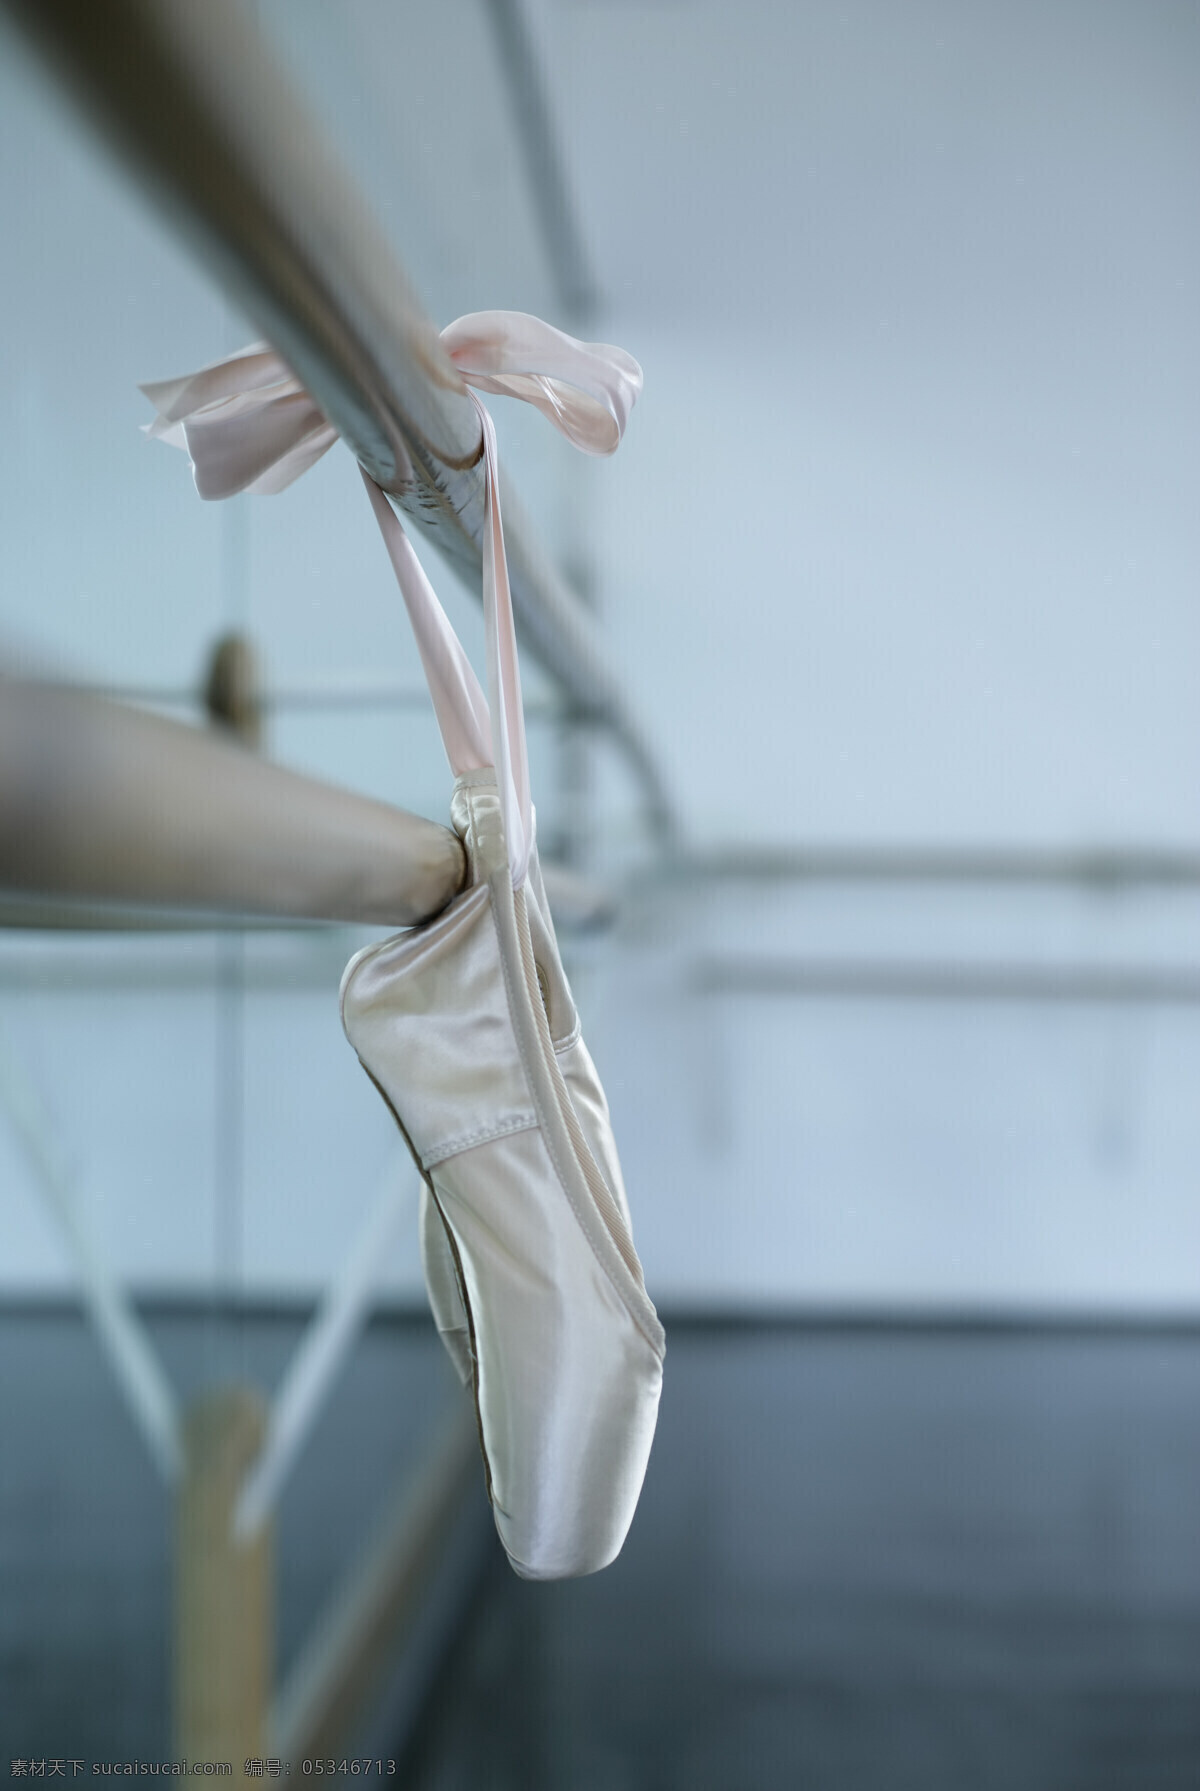 芭蕾 舞鞋 特写 舞蹈 练功房 挂着 鞋带 芭蕾舞 摄影图 素材图库 高清图片 人体器官图 人物图片